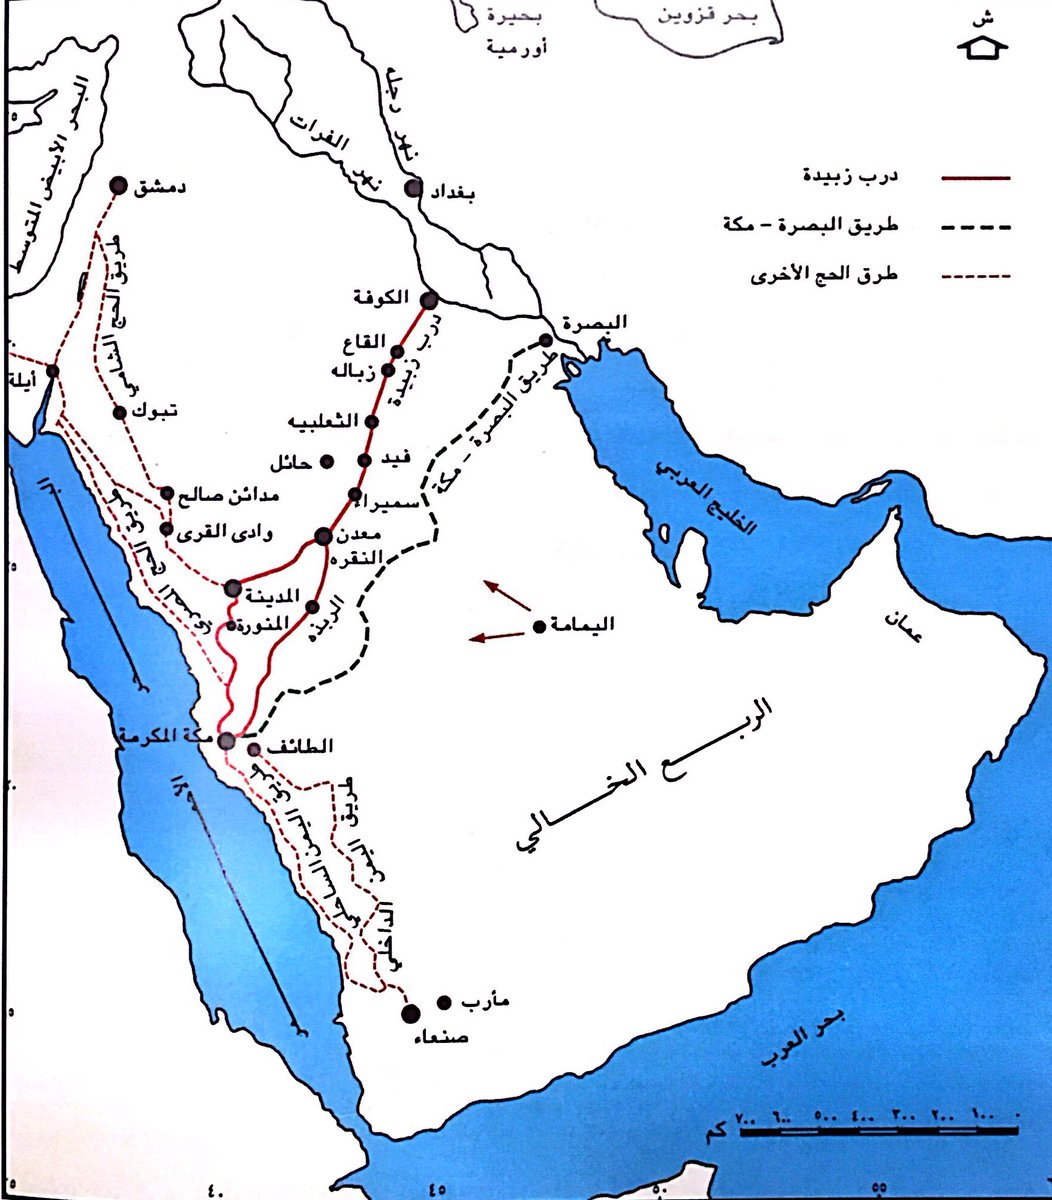 سعد بن محمد التويجري A Twitter خريطة لطرق الحج التي تحتوي على درب الزبيدة ومسار حج البصرة وحج الشام وحج اليمن وغيرها من طرق الحج.